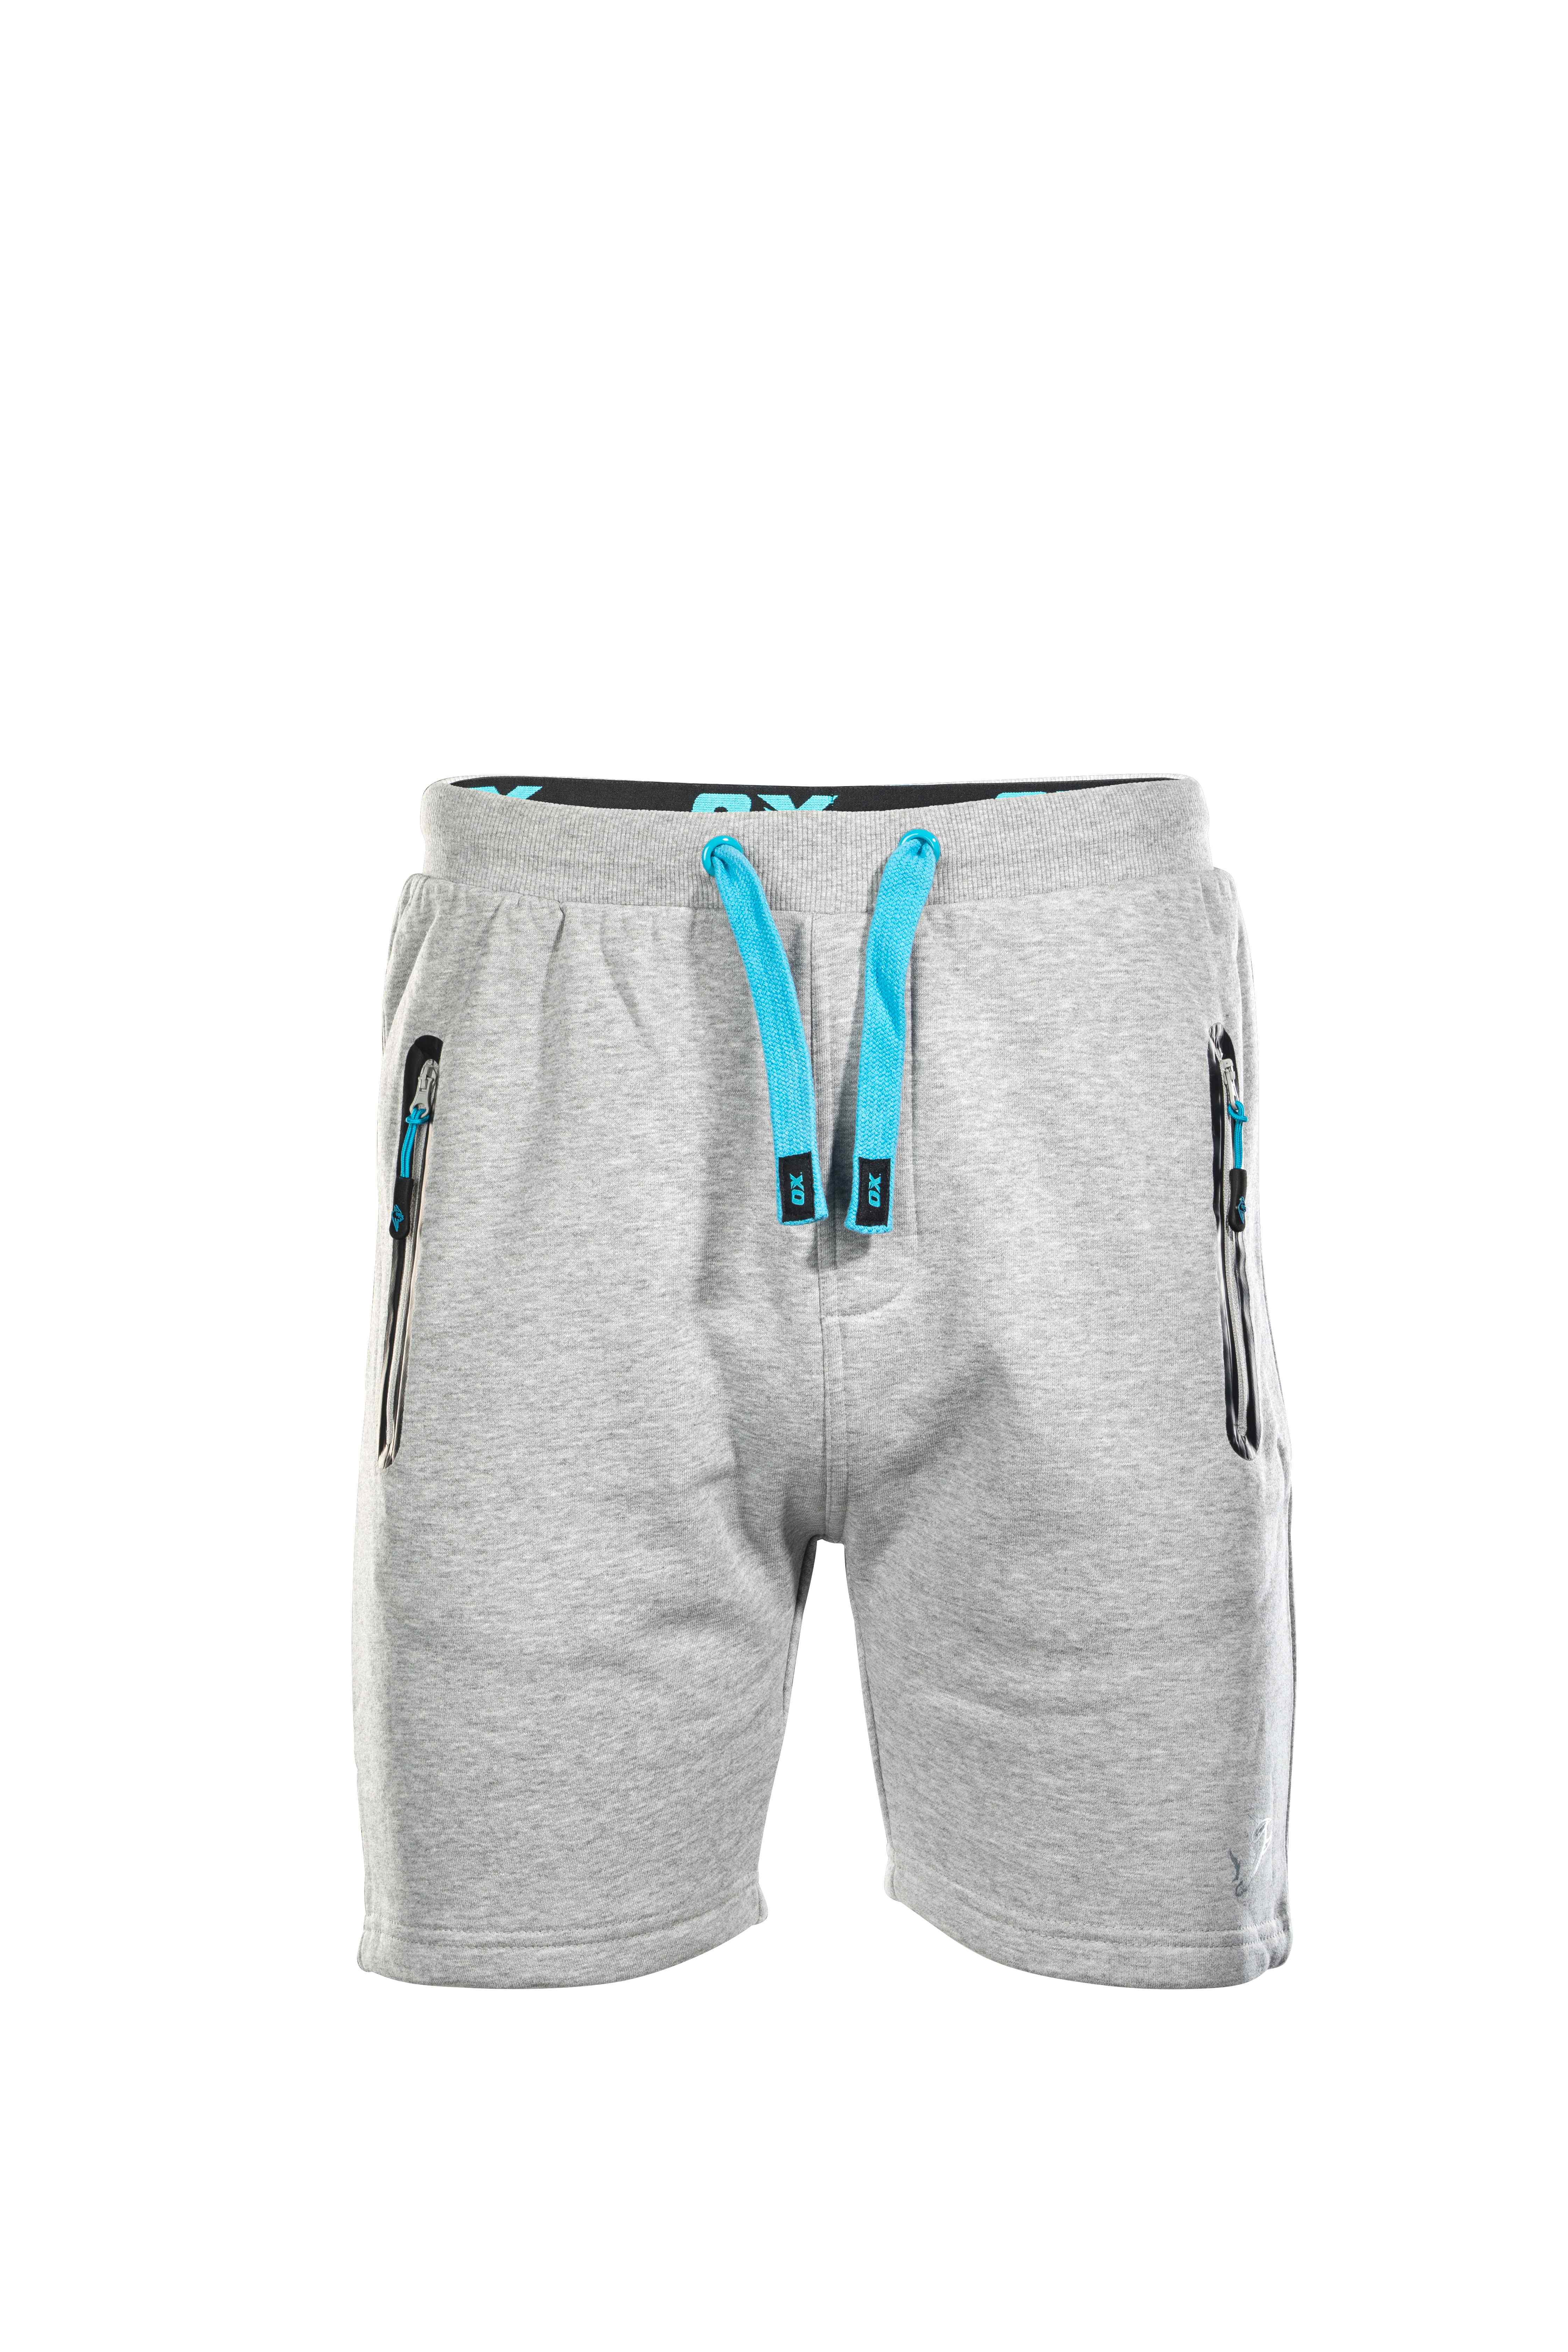 OX Jogger Shorts - Grey - 34